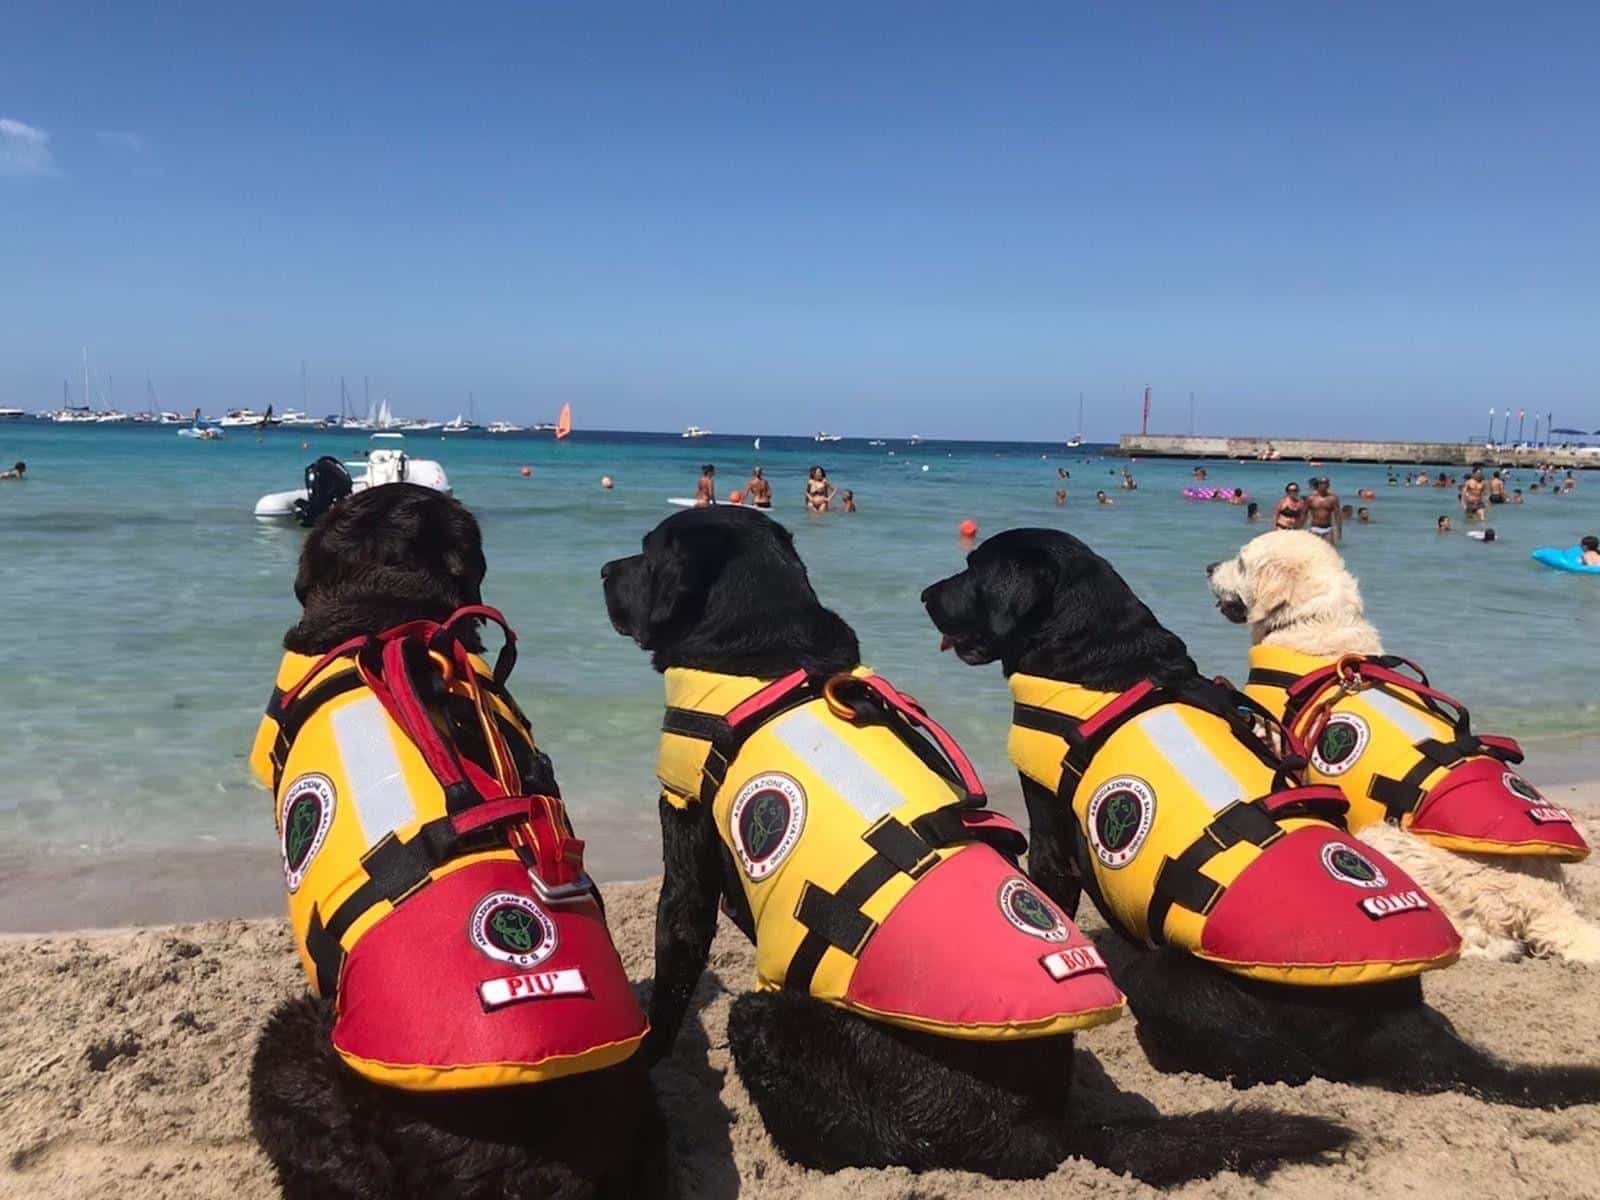 Spiagge libere a Catania, cani addestrati in azione alla Playa per operazioni di salvataggio in mare